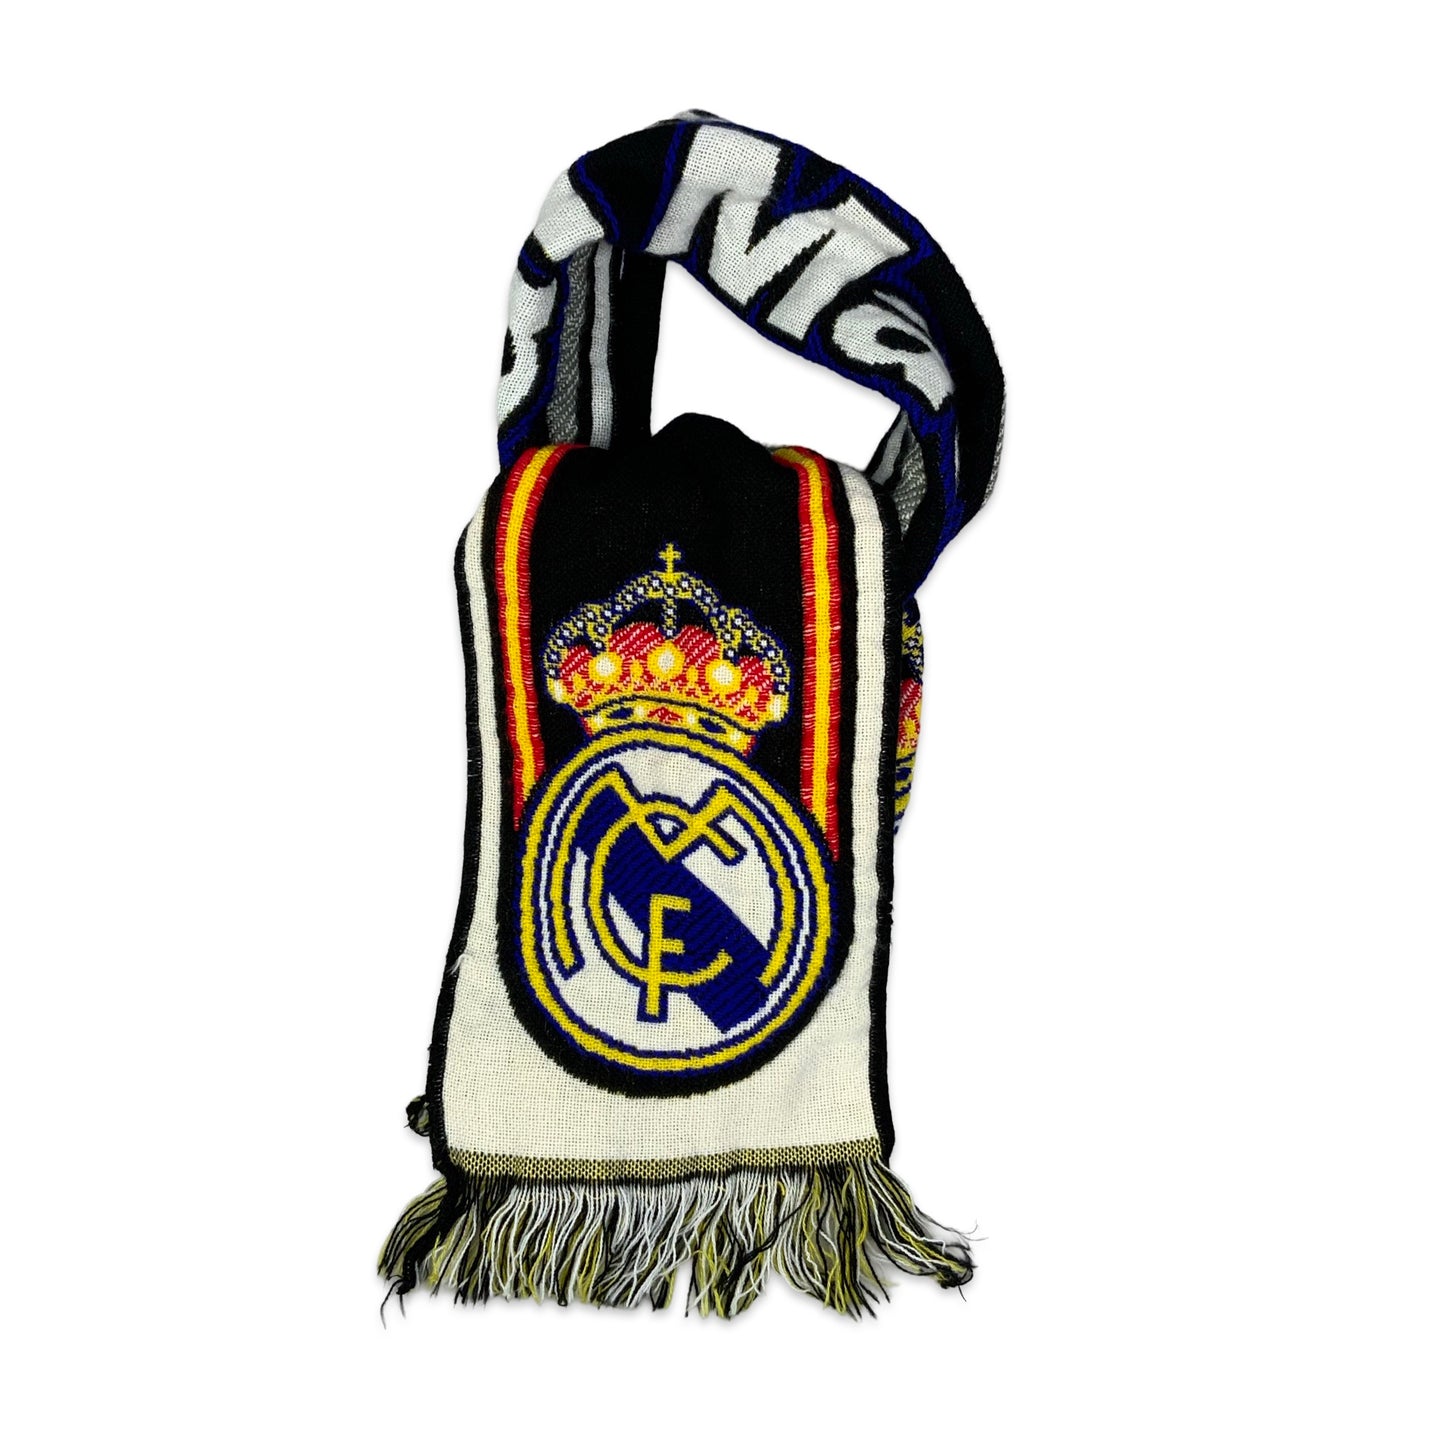 Vintage Real Madrid FC Scarf